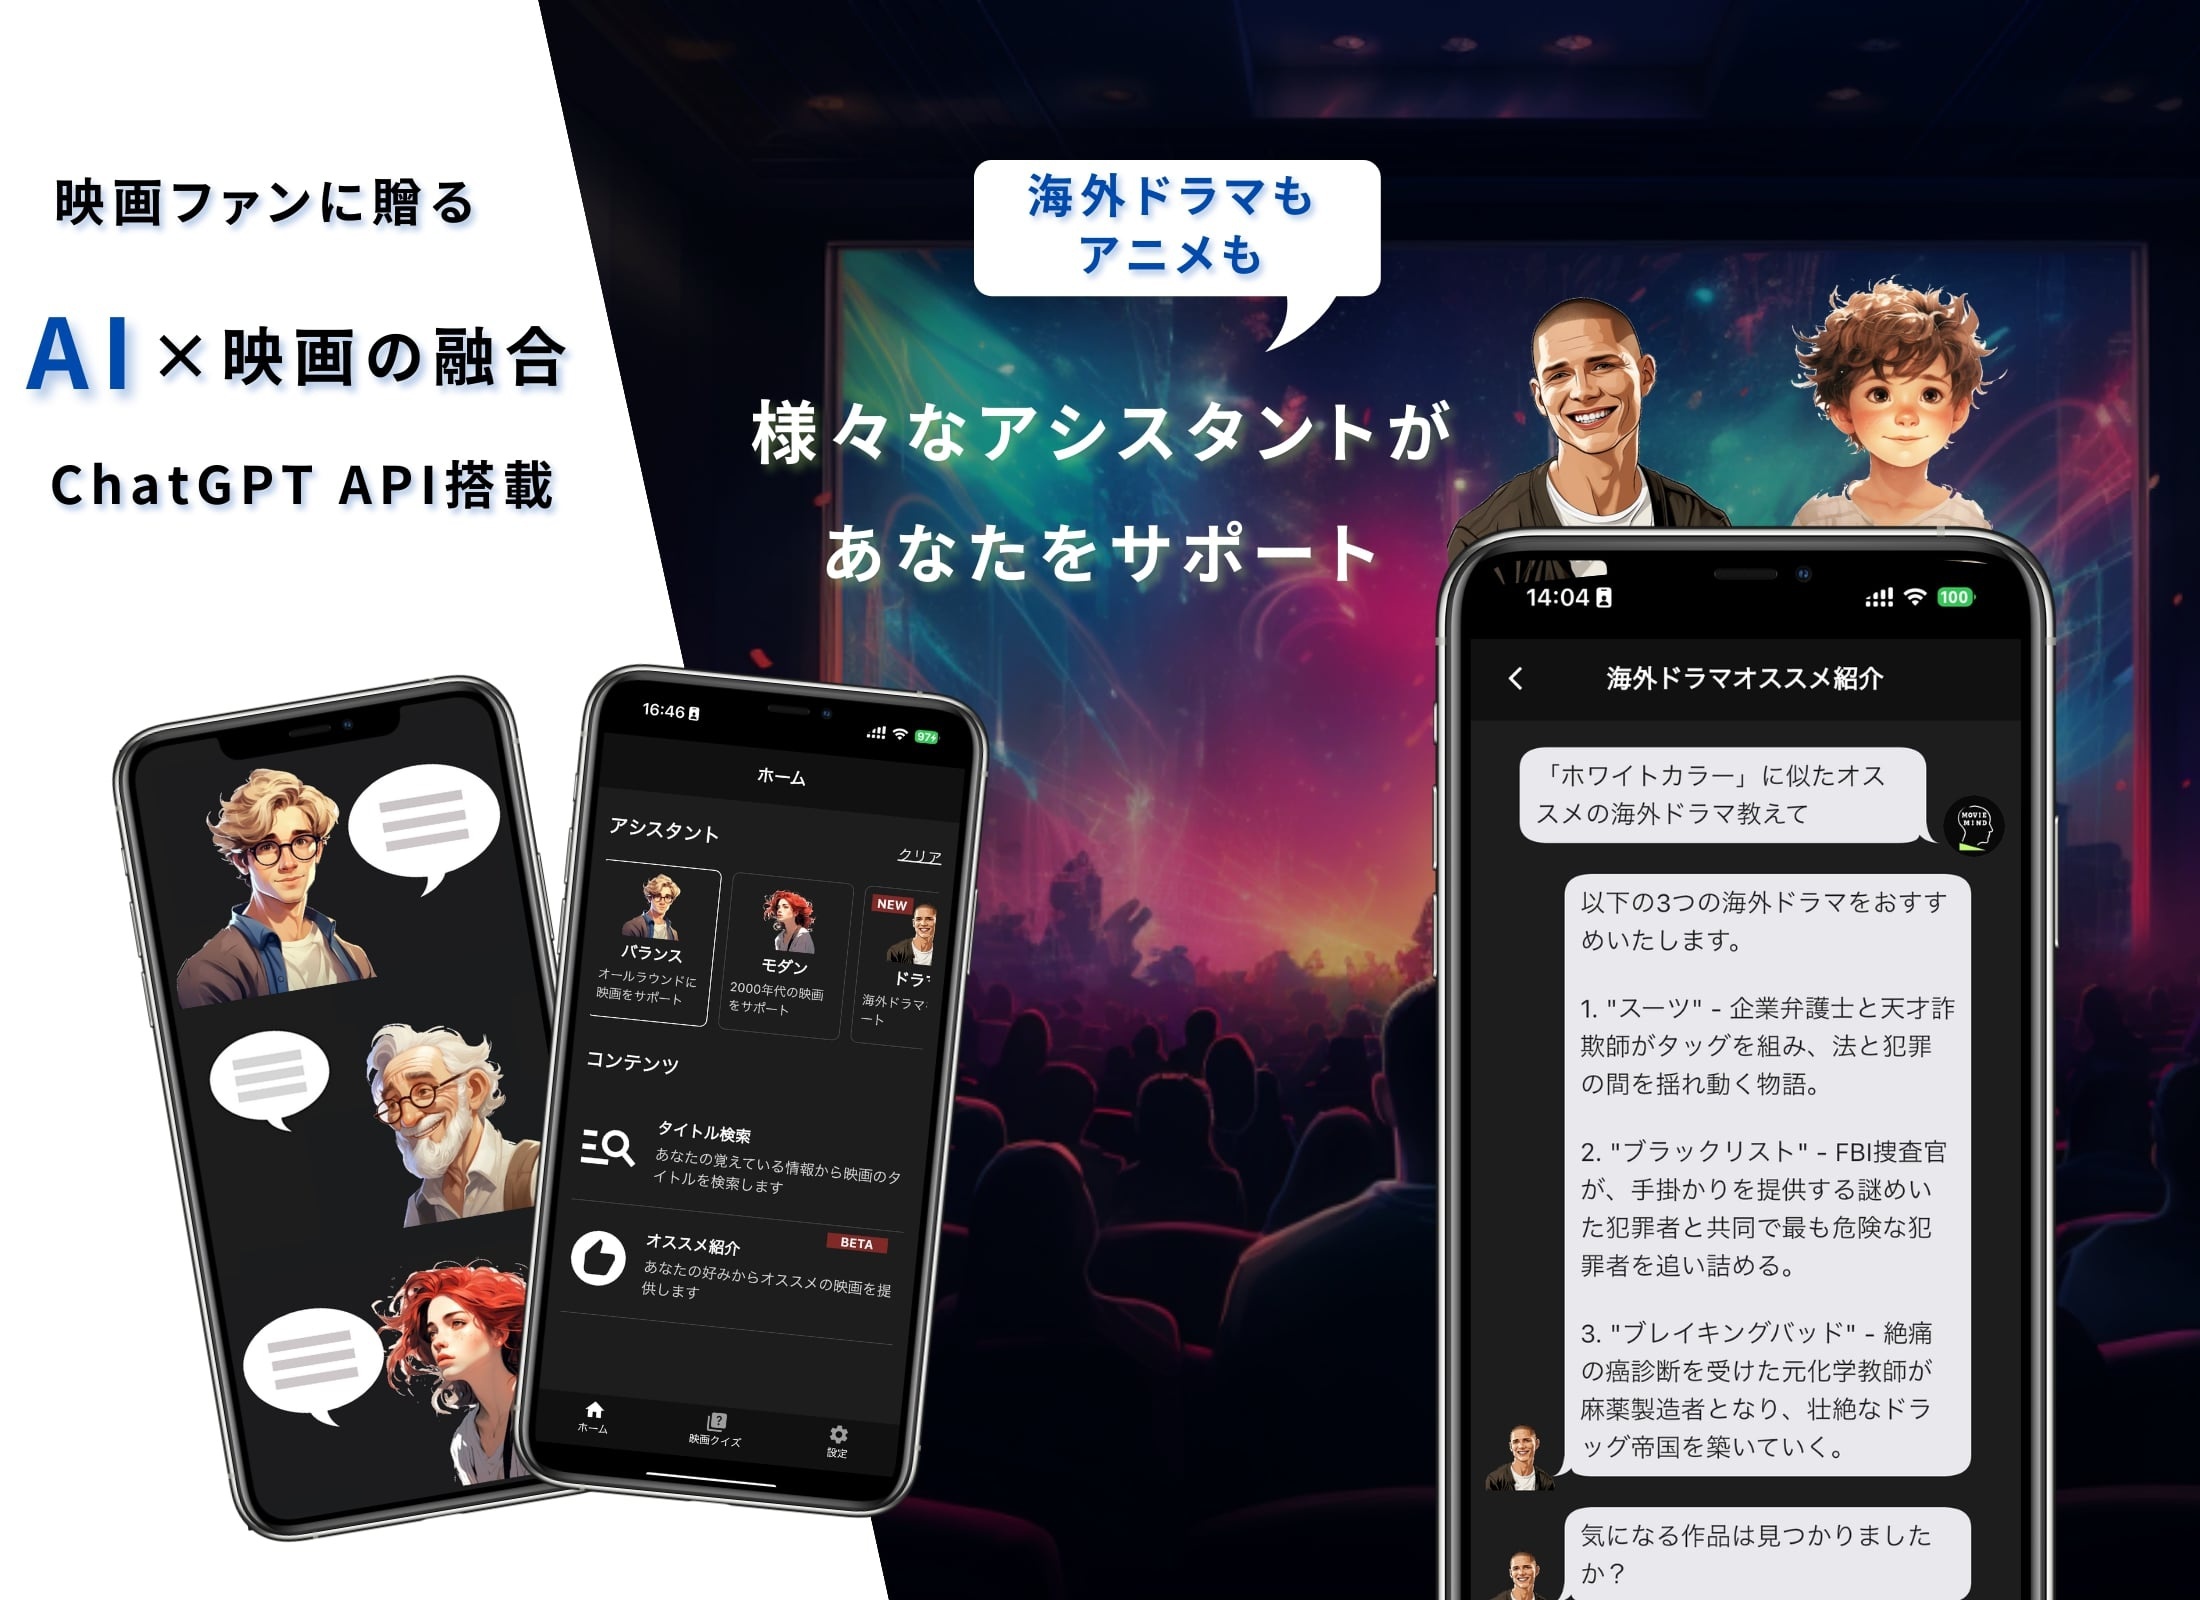 AI×映画の融合、新感覚アプリ「Movie Mind」(iOS対応)